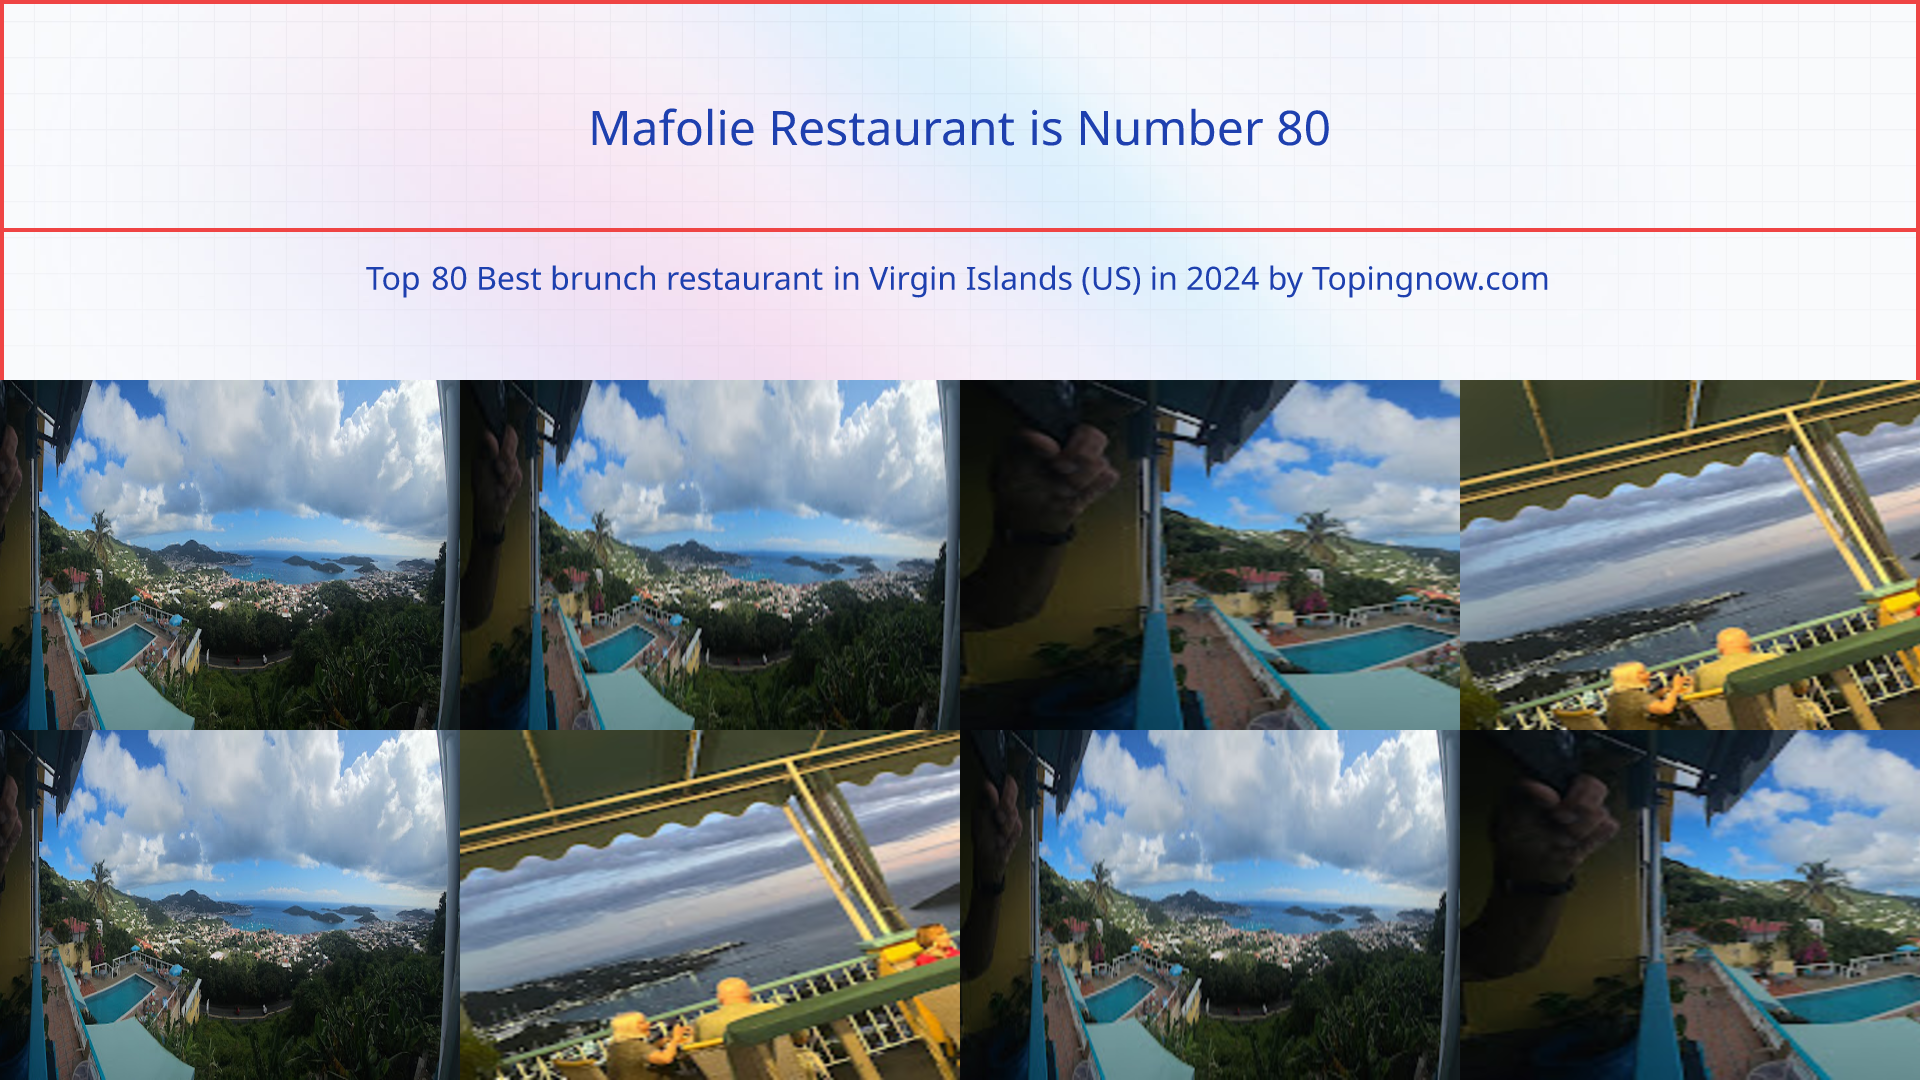 Mafolie Restaurant: Top 80 Best brunch restaurant in Virgin Islands (US) in 2024